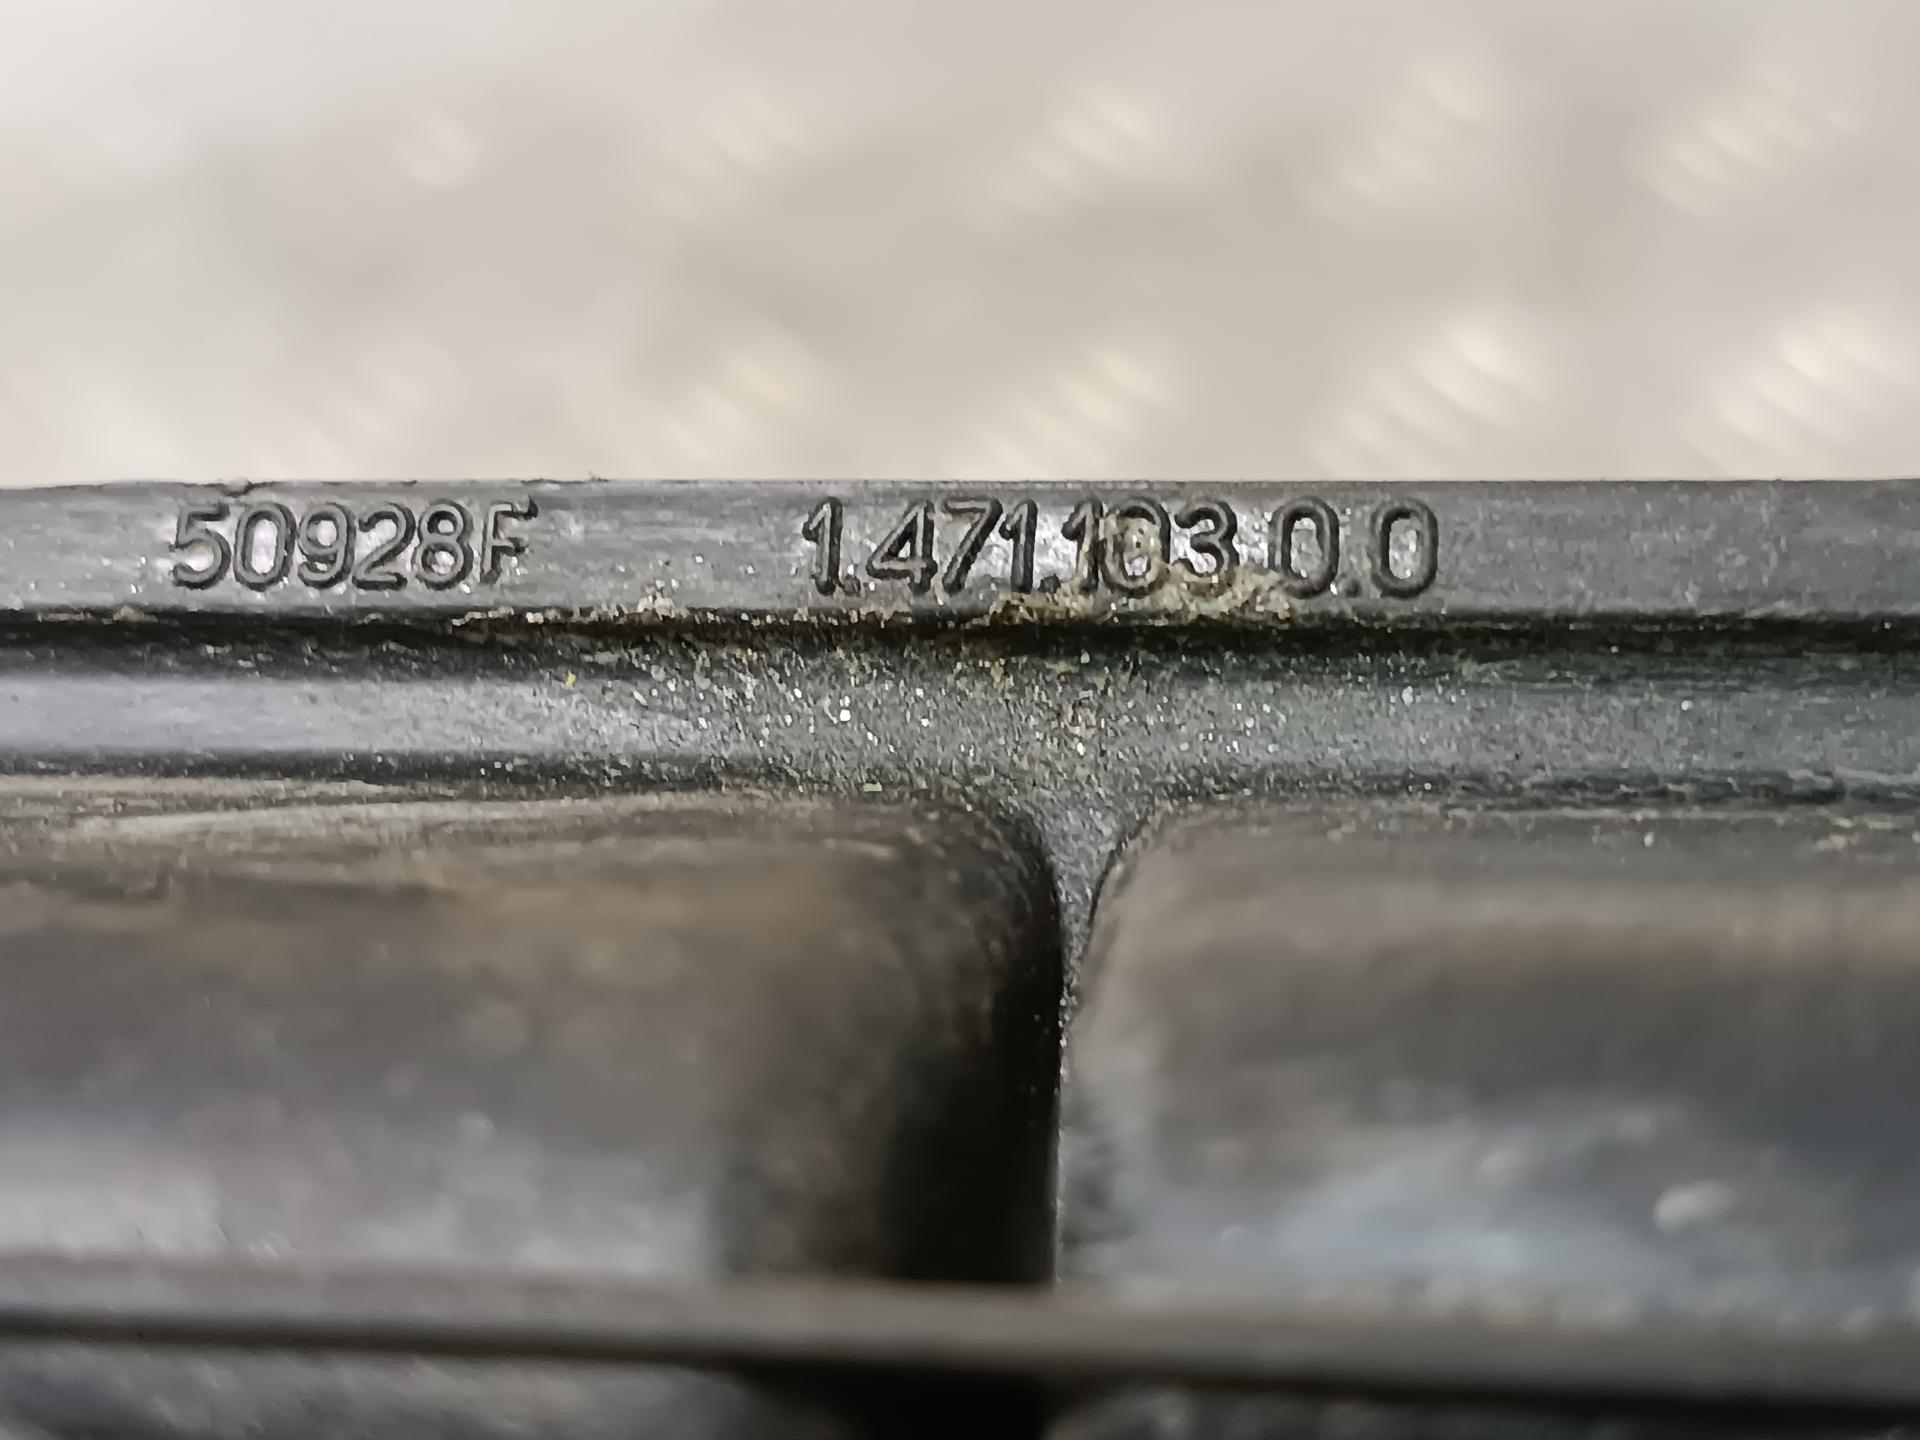 Радиатор отопителя (печки) Peugeot 307 купить в России